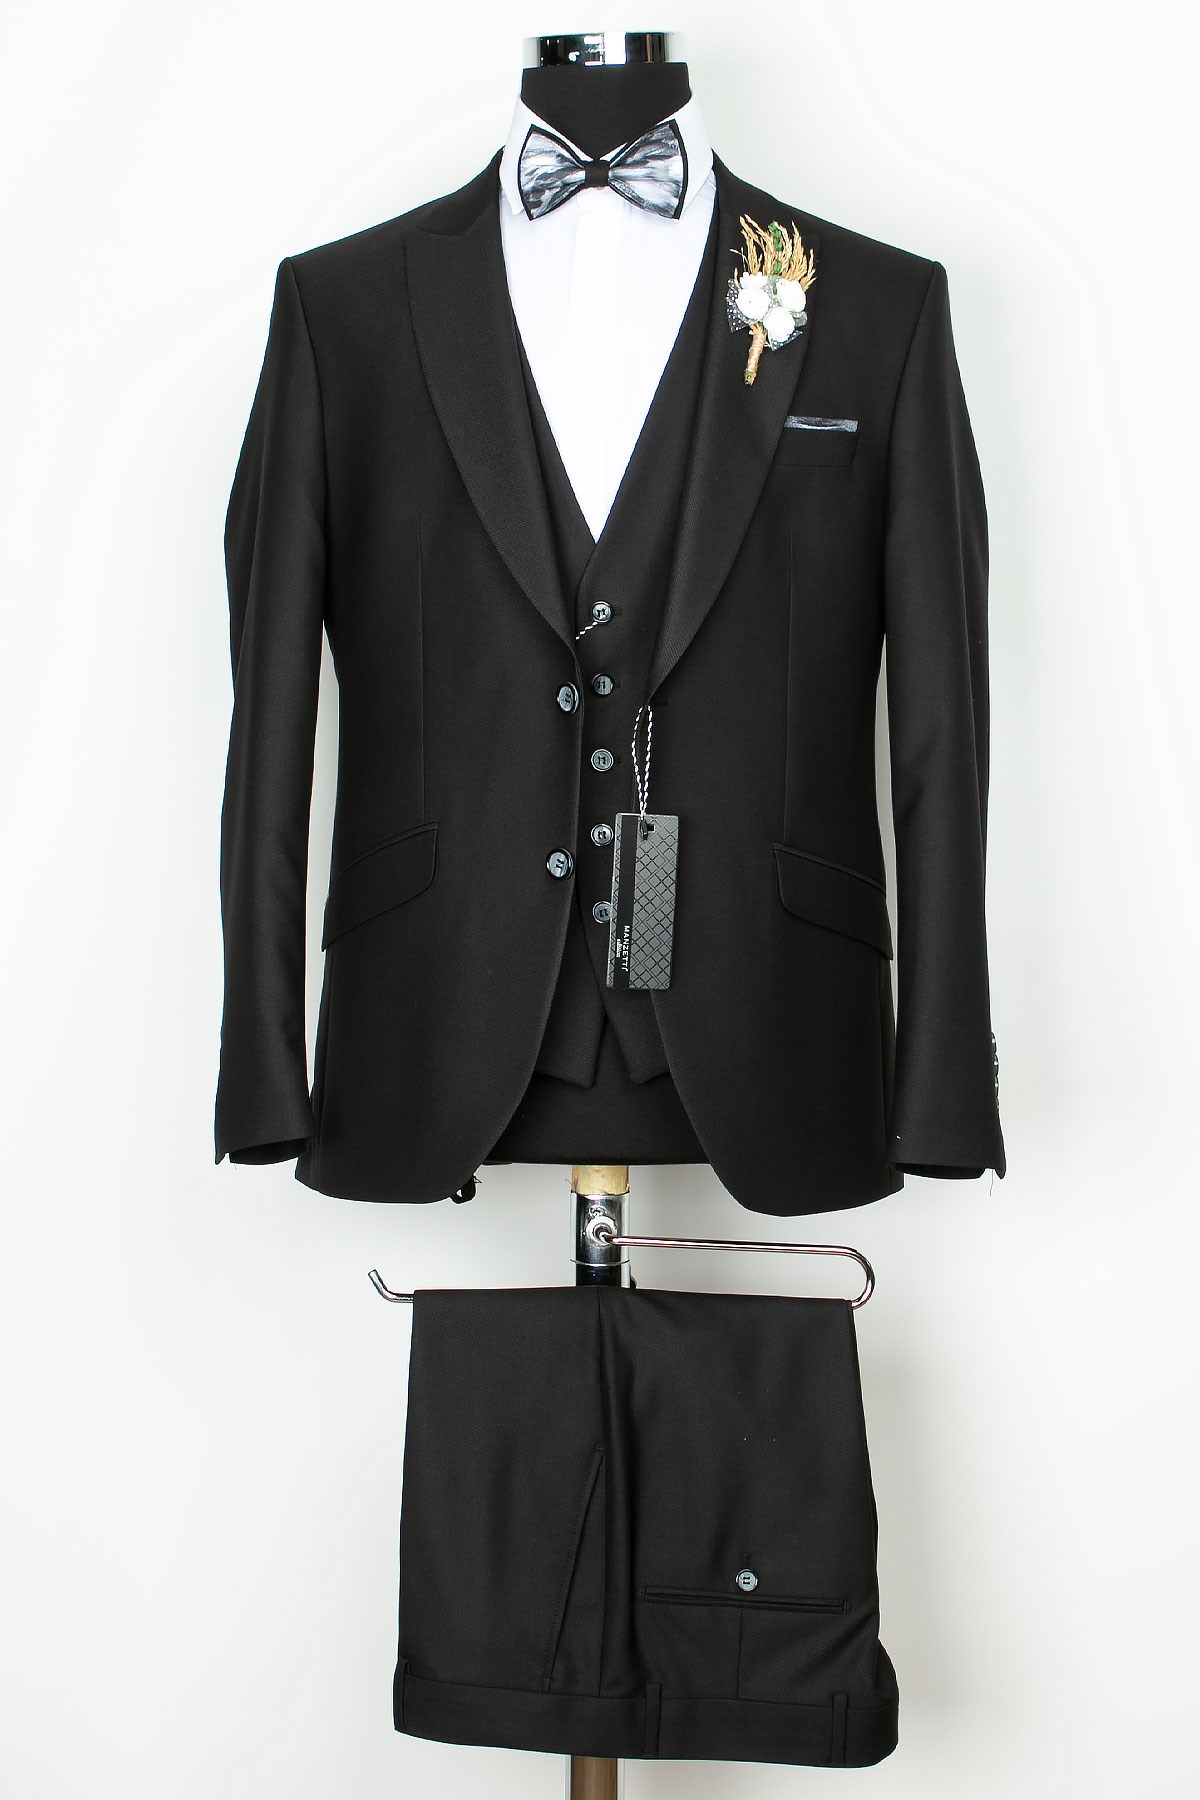 Erkek - Damatlık - Takım - Elbise - Siyah - MNZ8036 | Modavina